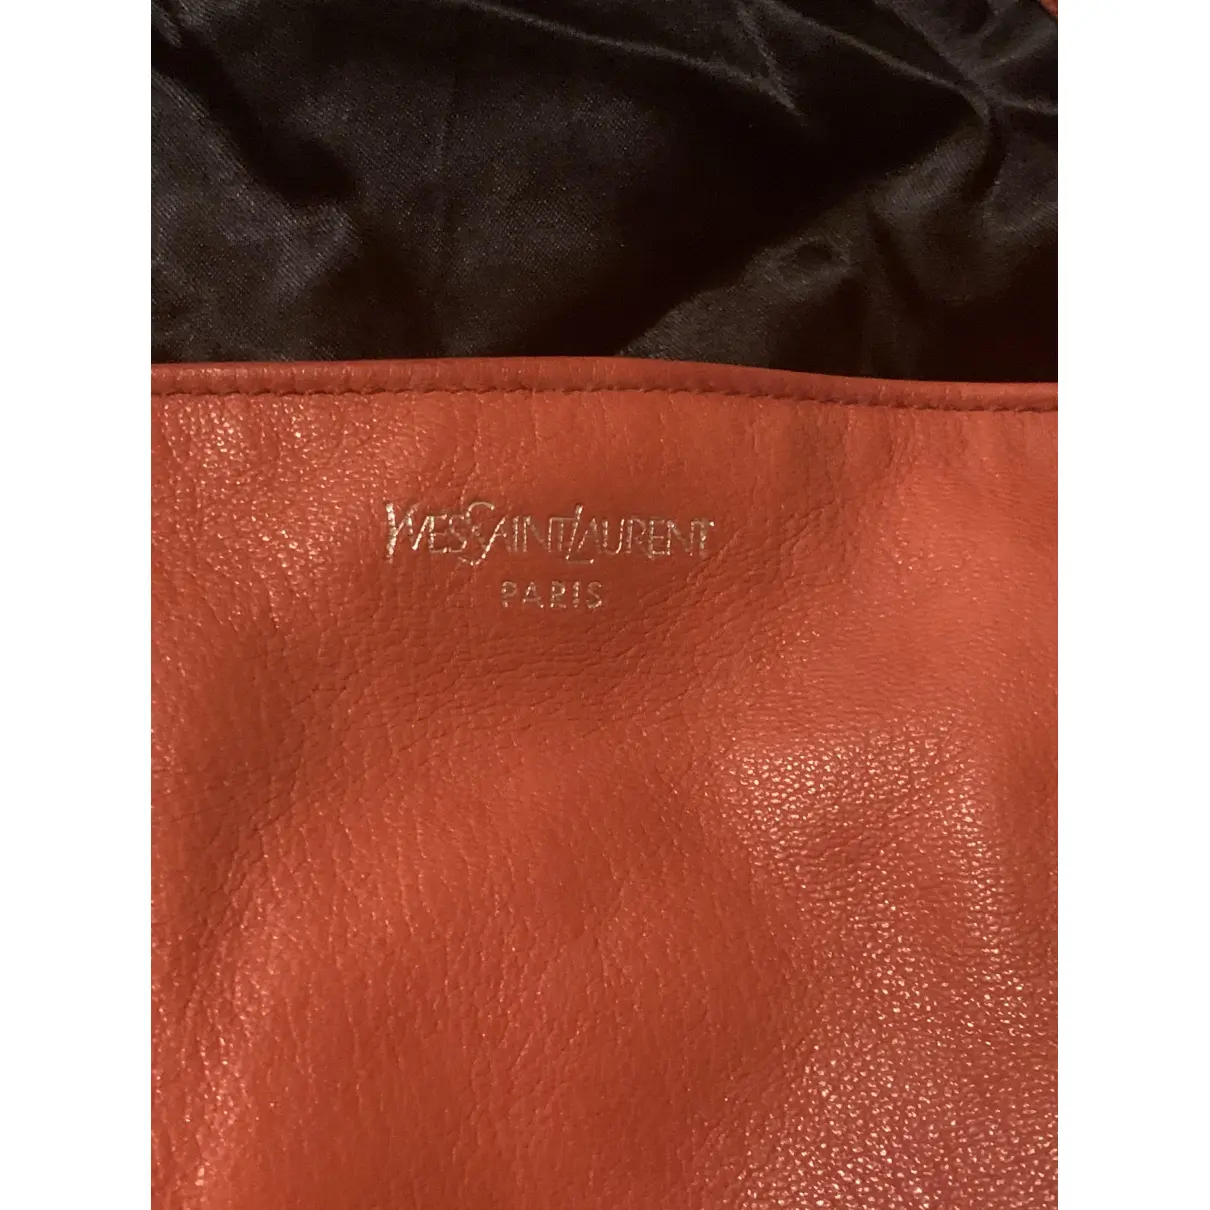 Mombasa leather bag Yves Saint Laurent - Vintage